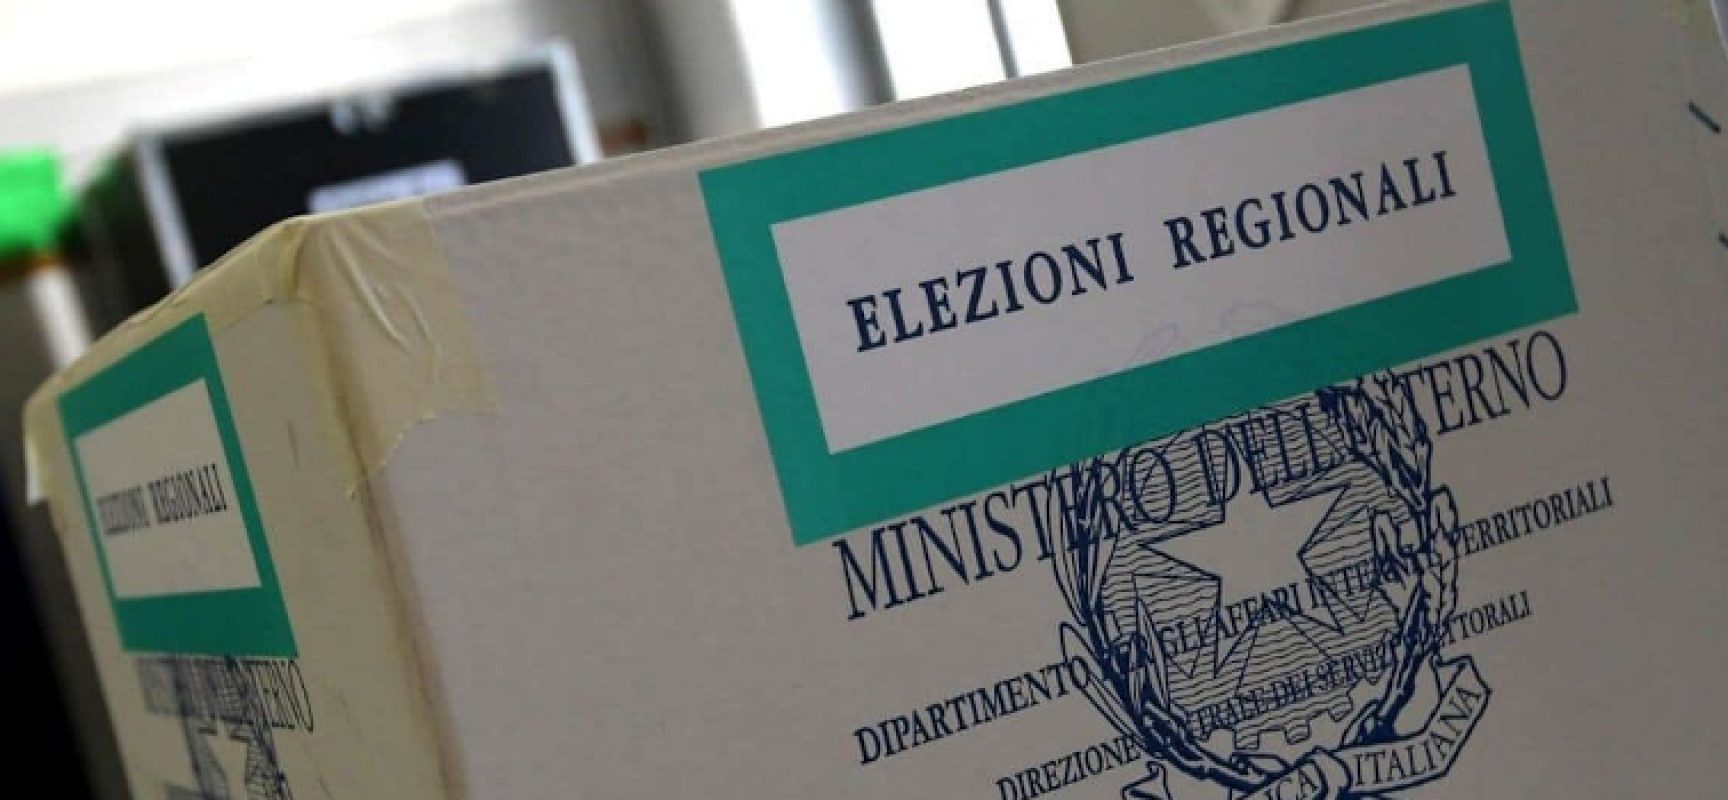 Elezioni regionali e referendum: sorteggio degli scrutatori / QUANDO e DOVE